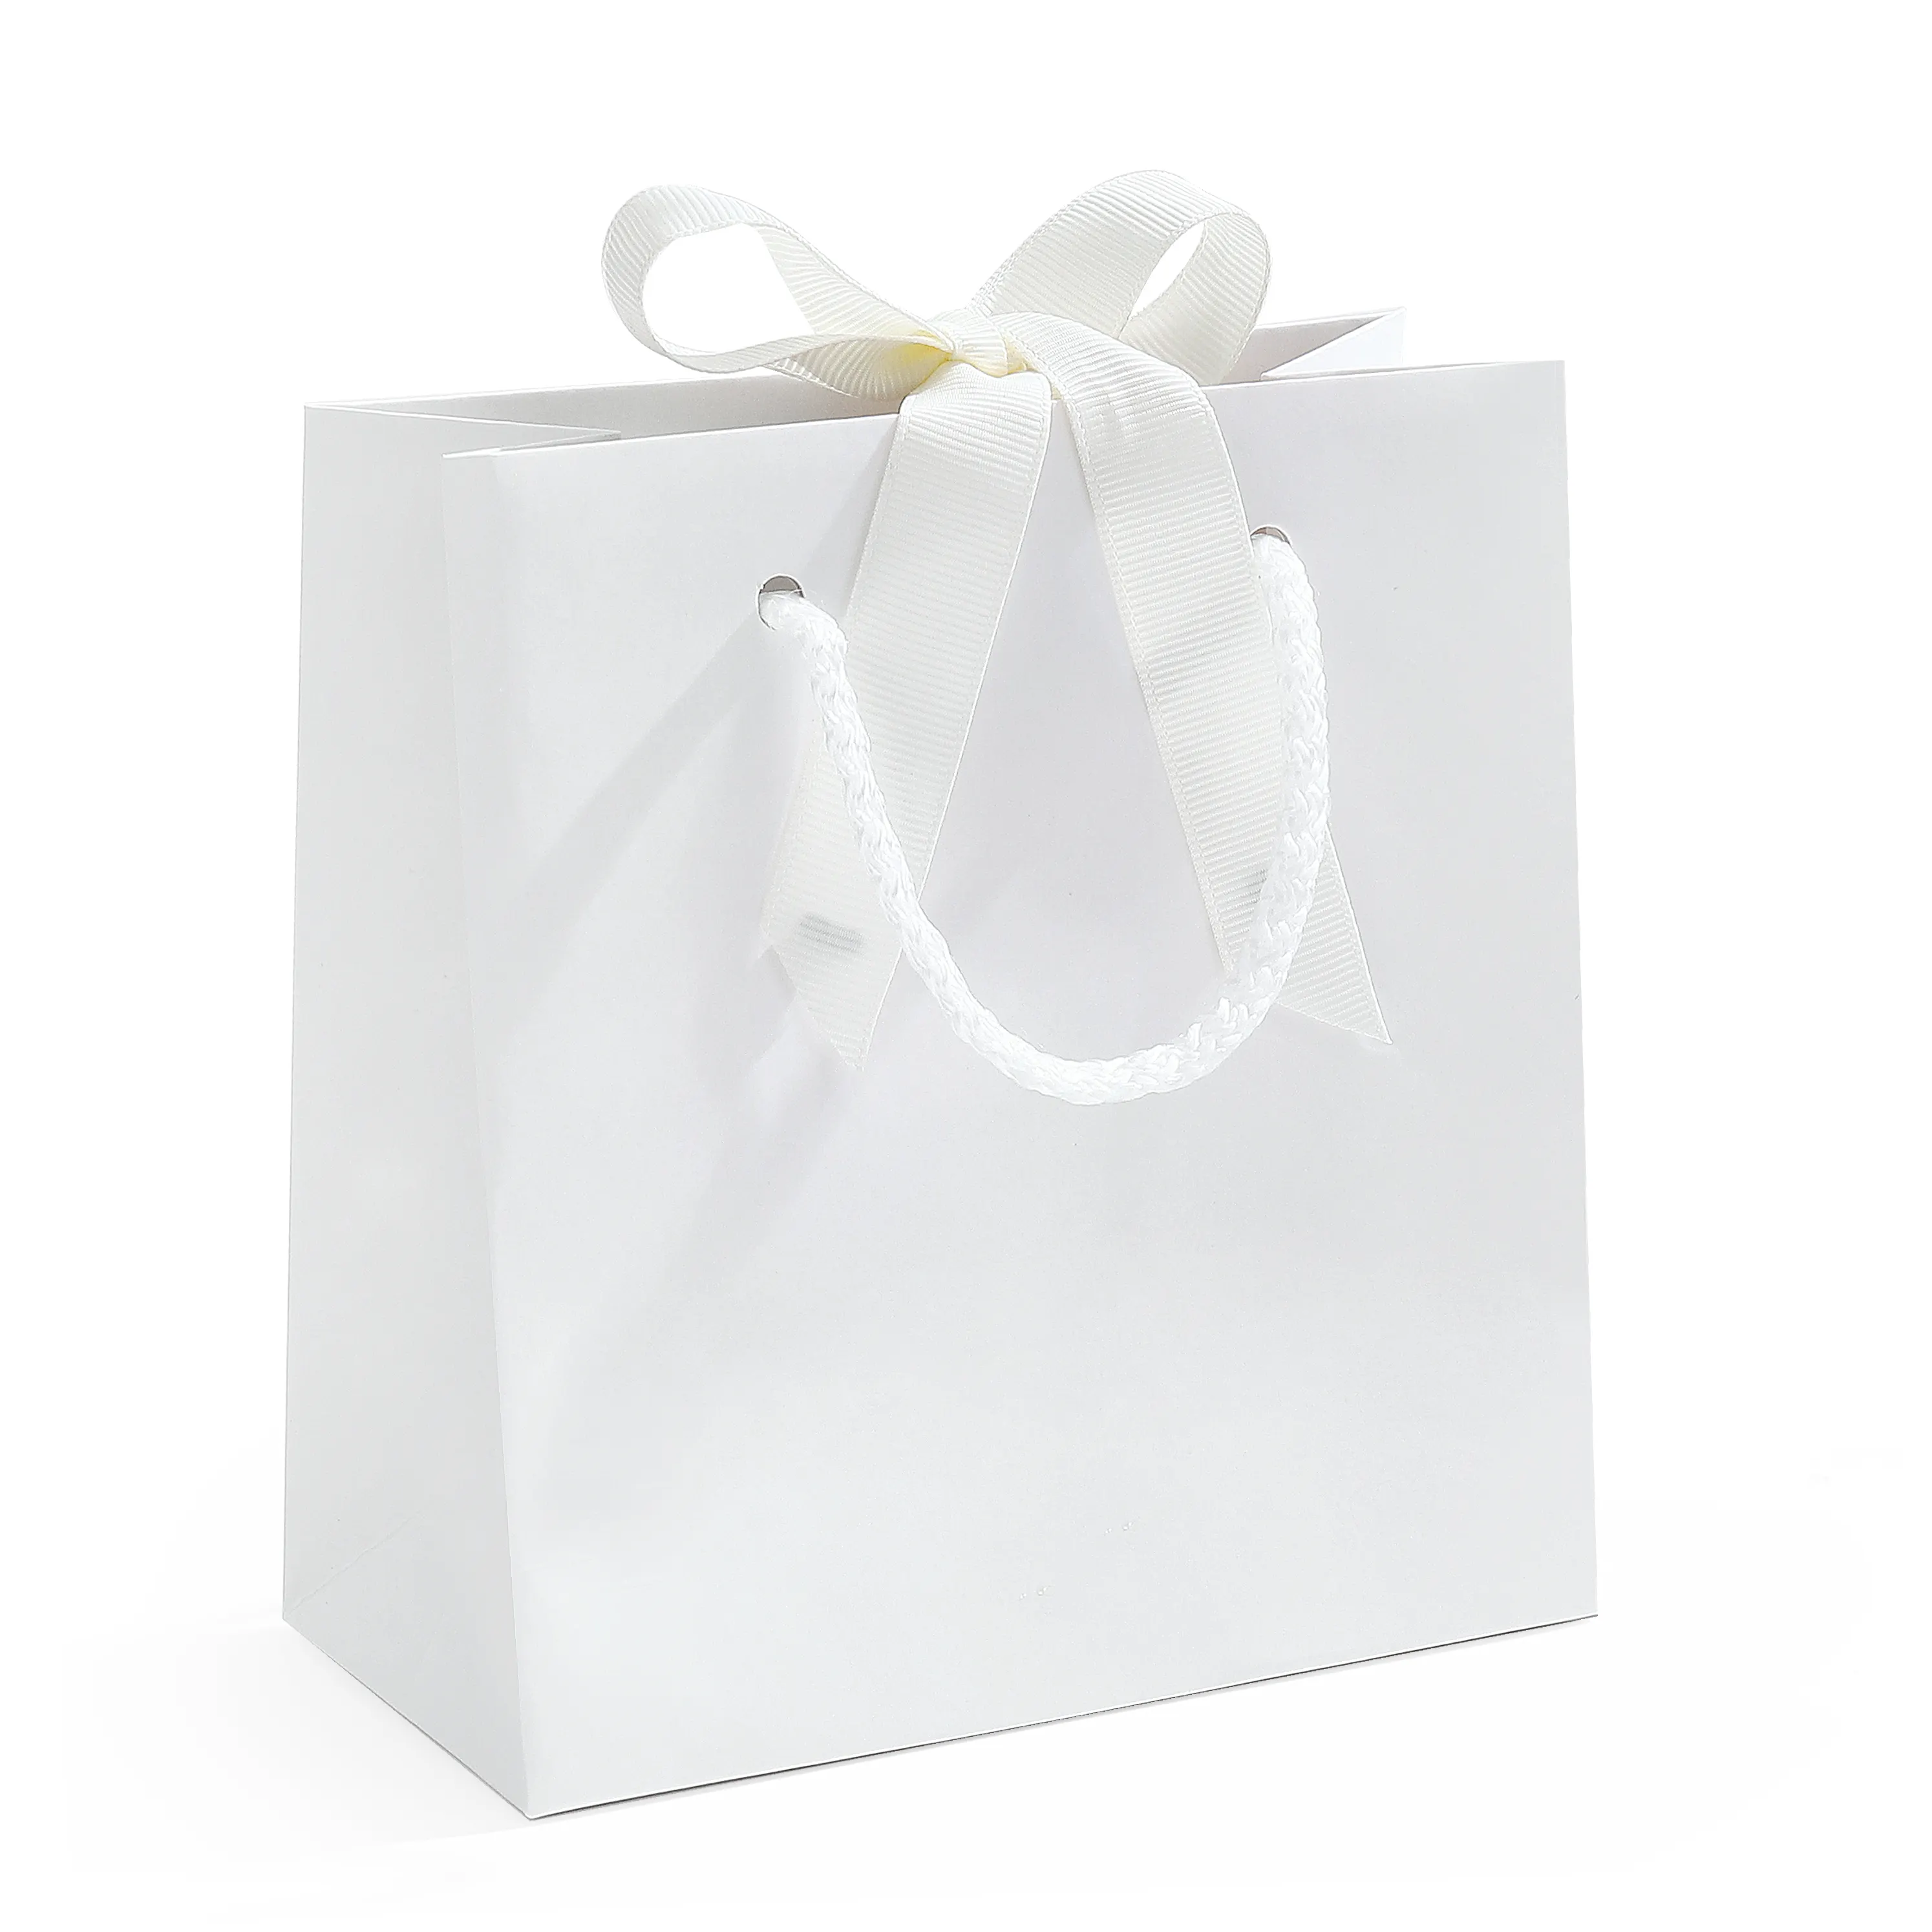 스팟 환경 보호 종이 봉투 재사용 빈 핸드백 흰색 묶여 선물 포장 도매 쇼핑 종이 가방